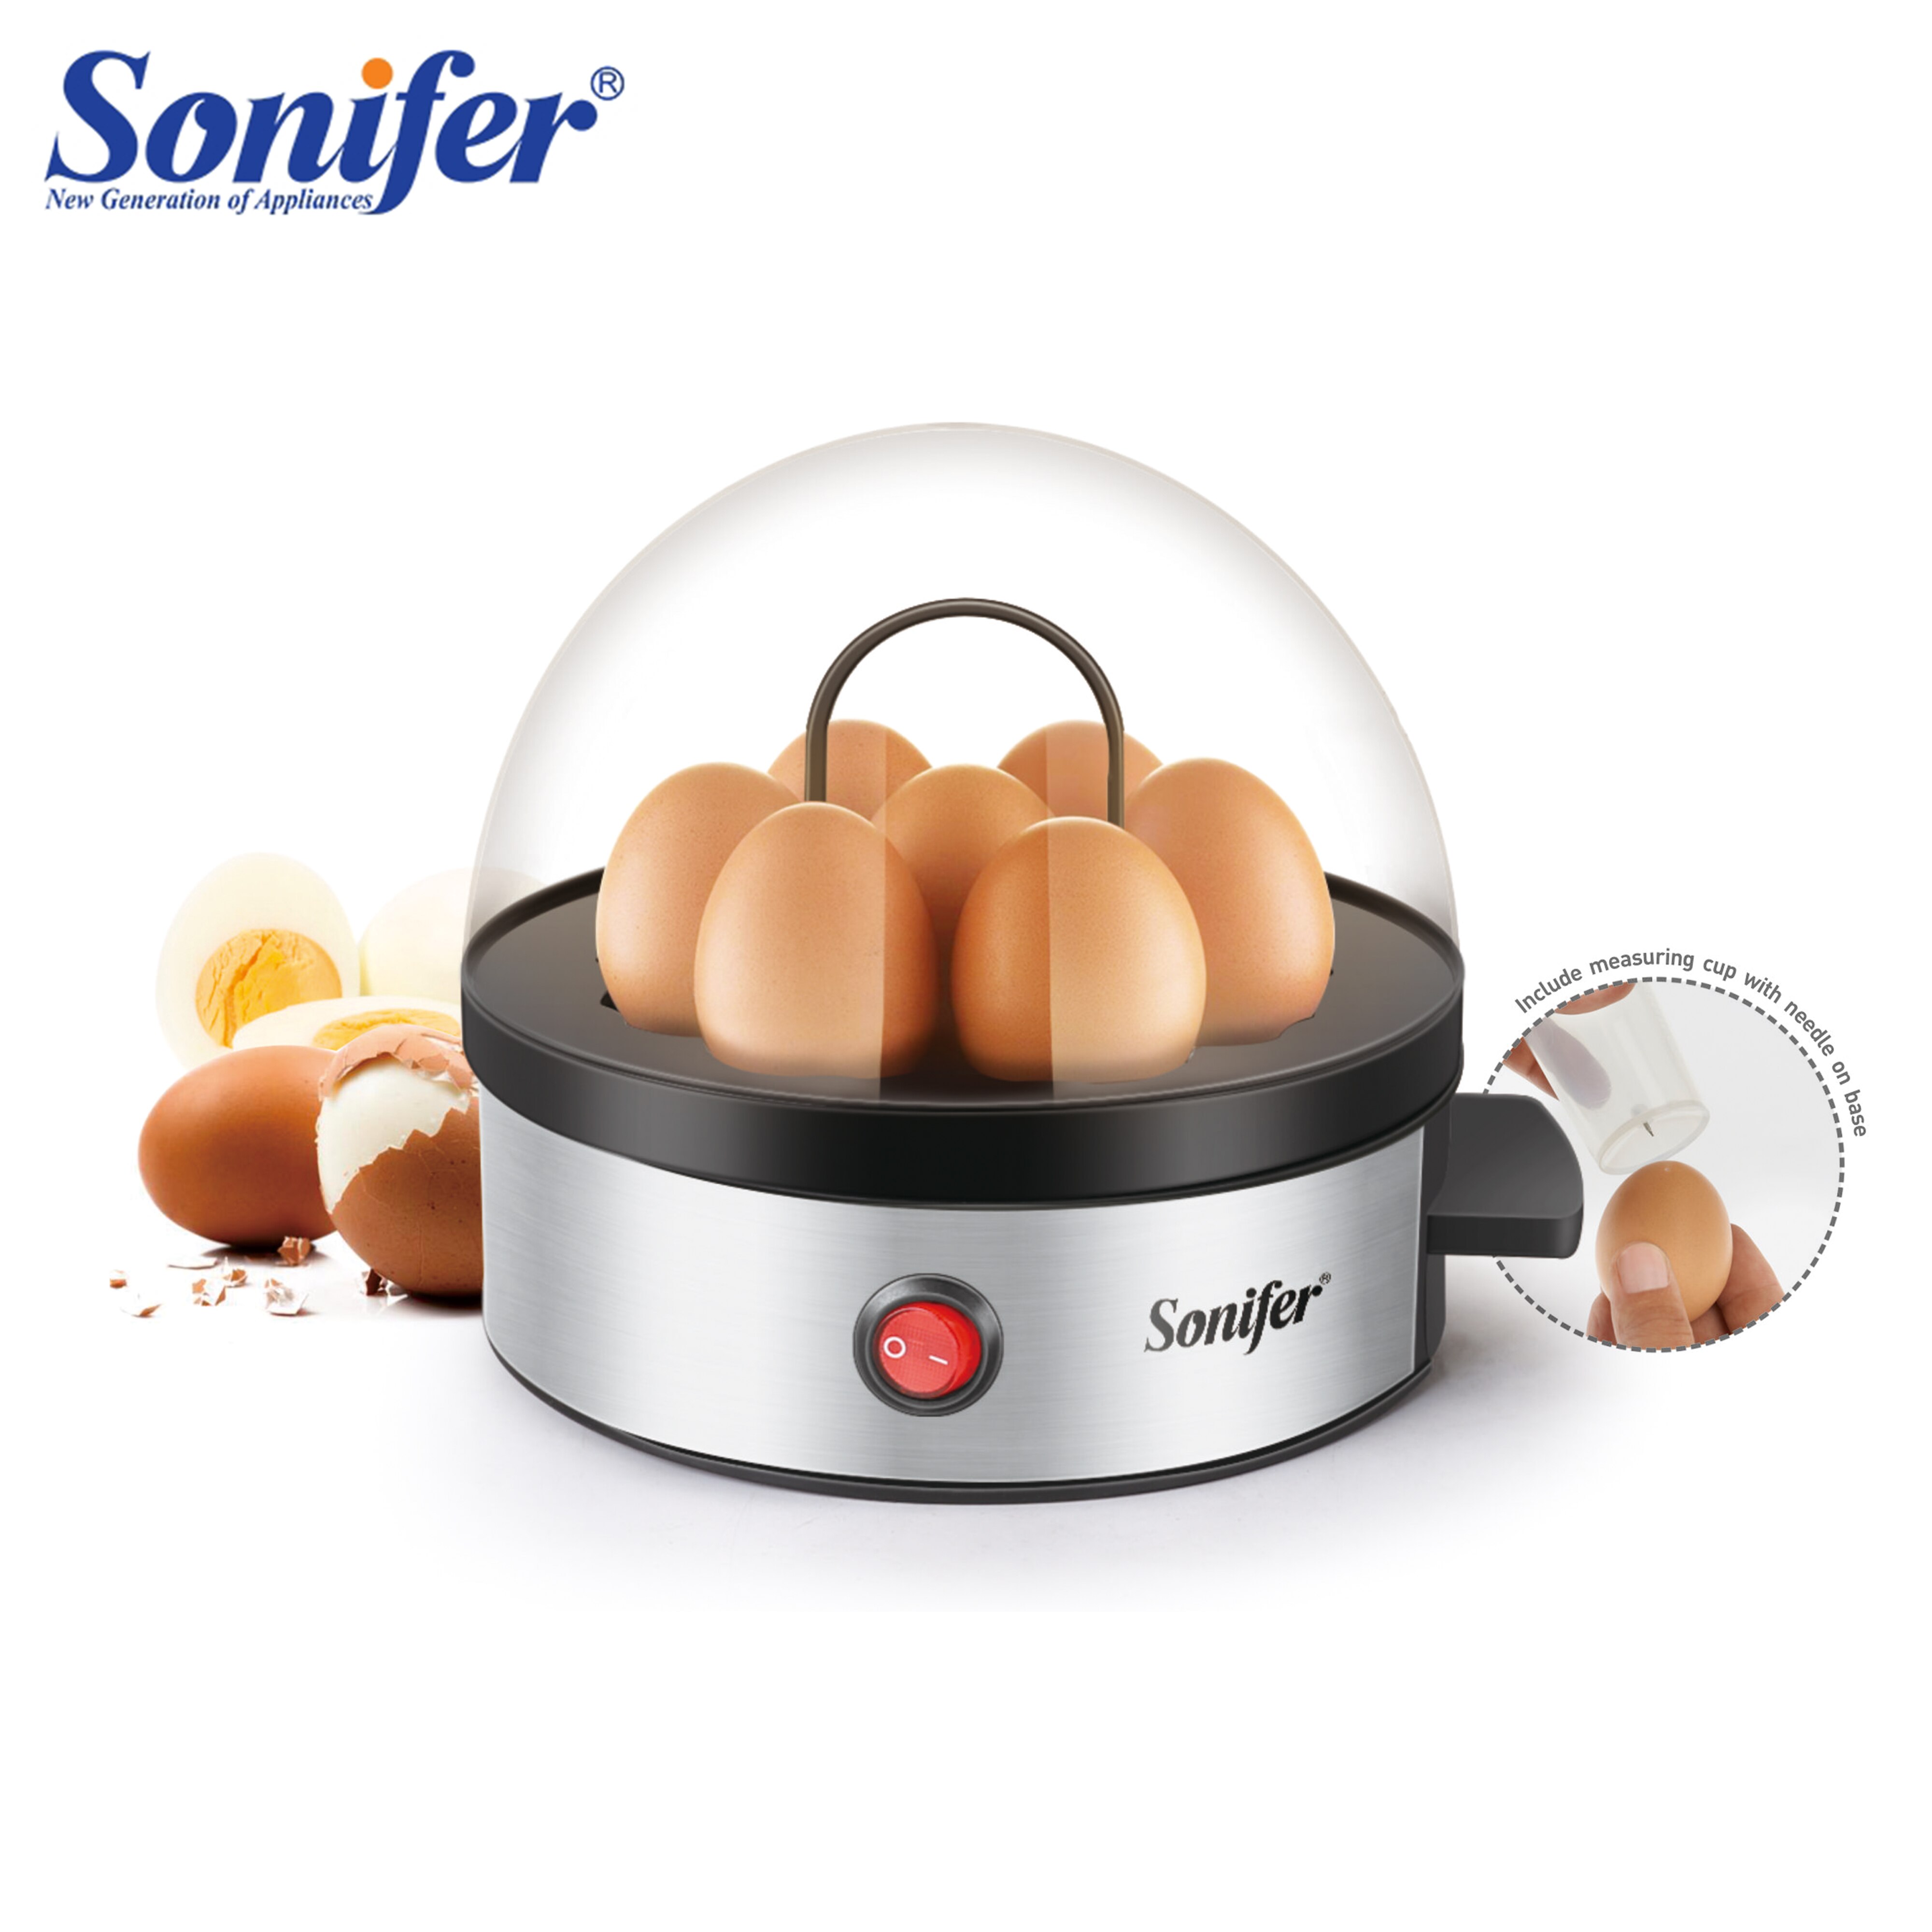 Multifunctionele Elektrische Eierkoker Cooker 7 Eieren Steamer Stroper Keuken Koken Tool Eierkoker Auto-Off 350W Sonifer